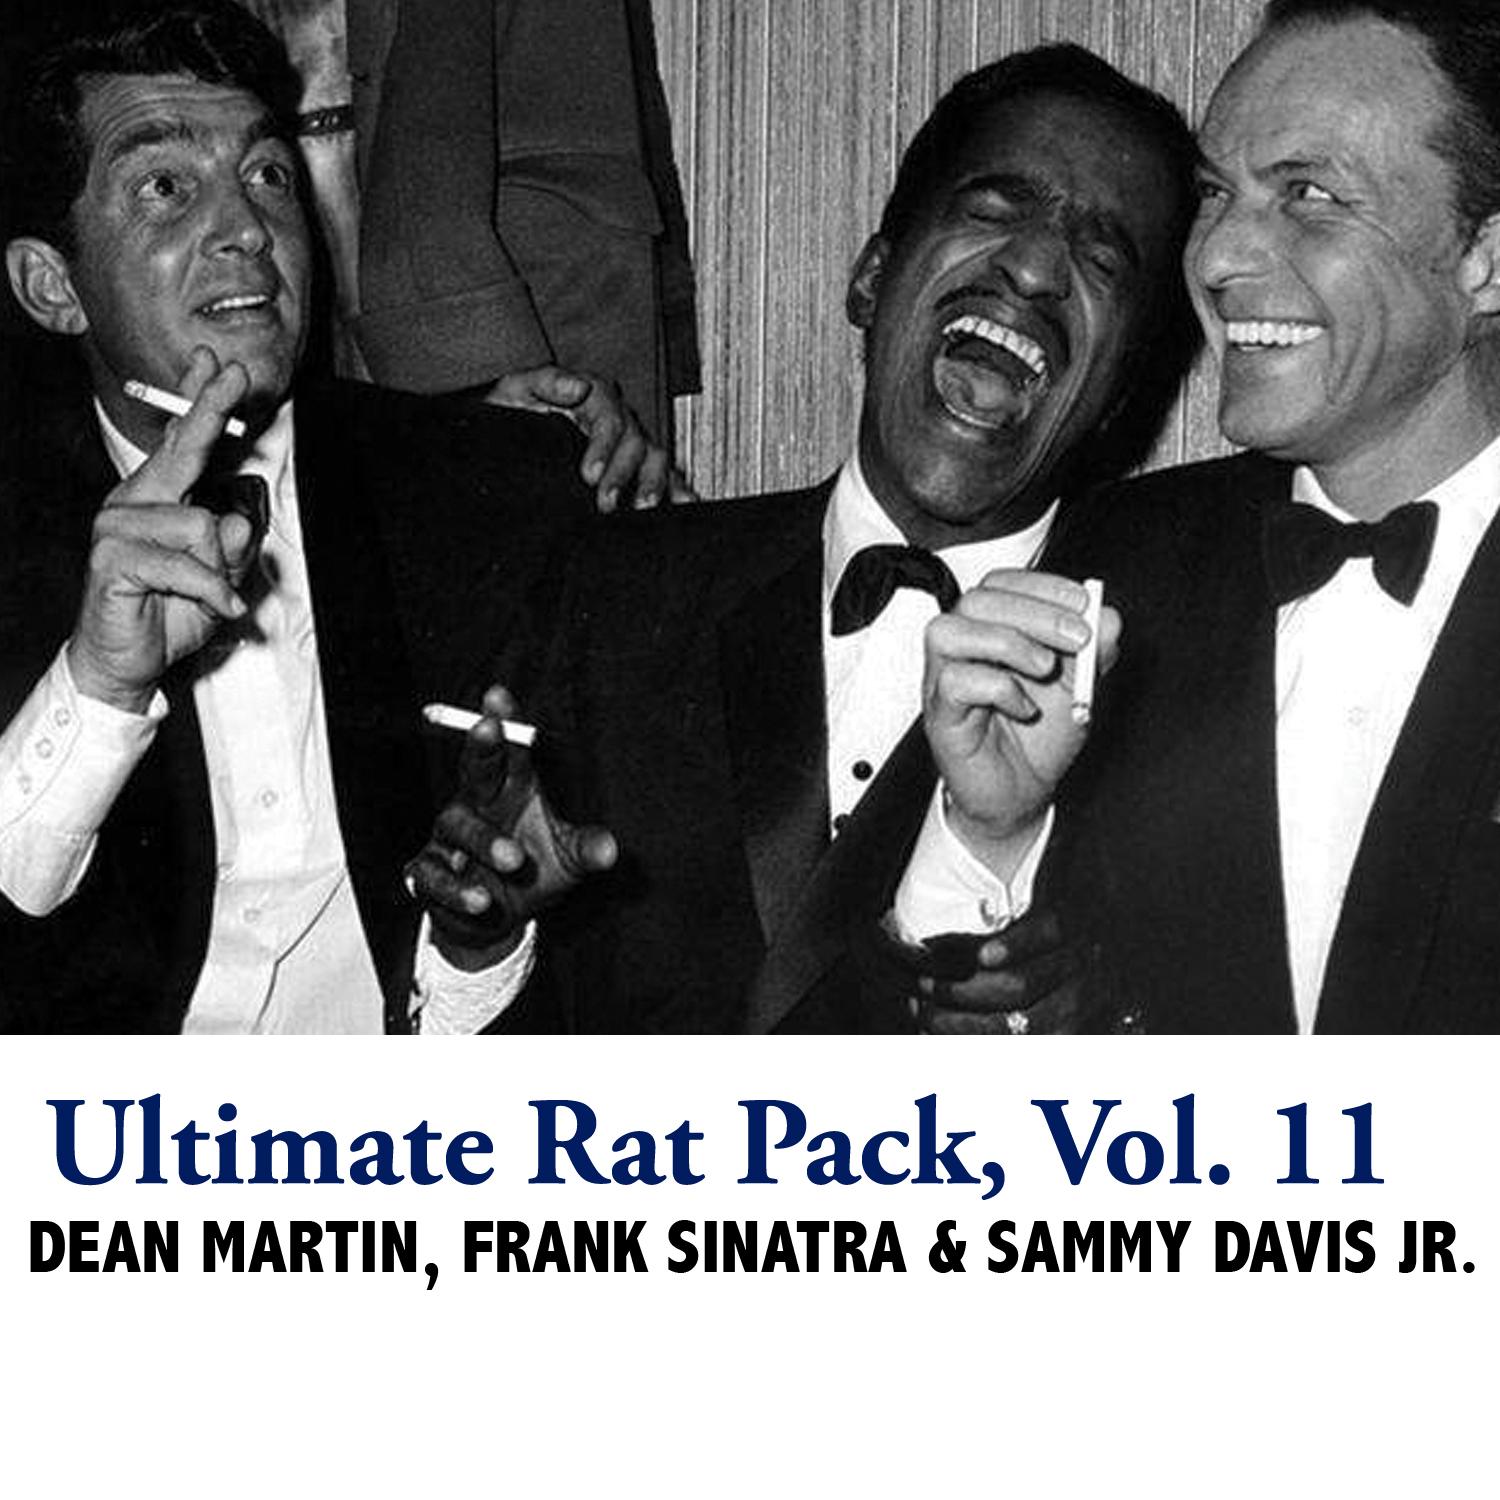 Ultimate Rat Pack, Vol. 11